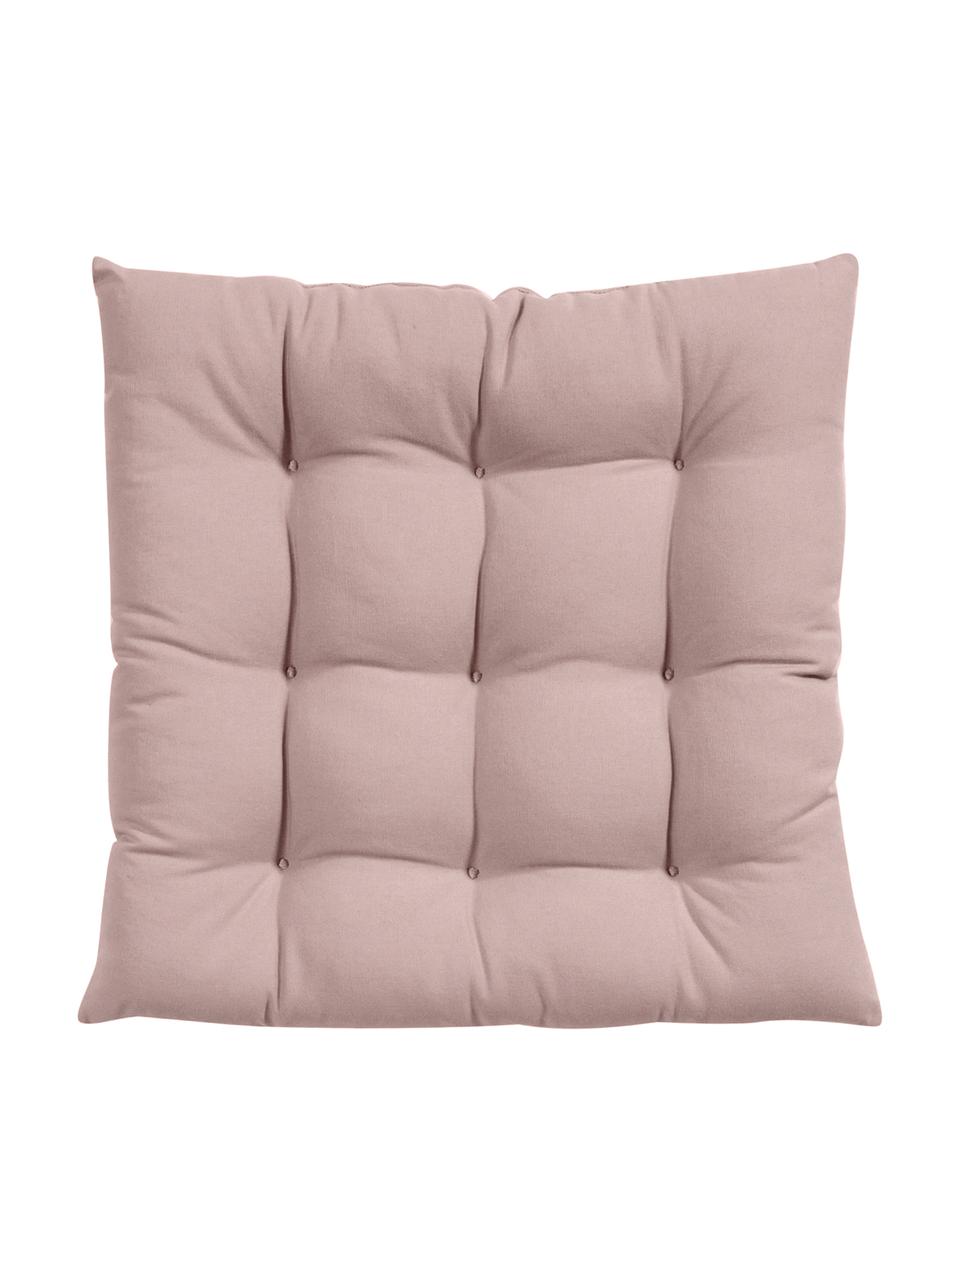 Cuscino sedia in cotone Ava, Rivestimento: 100% cotone, Rosa, Larg. 40 x Lung. 40 cm